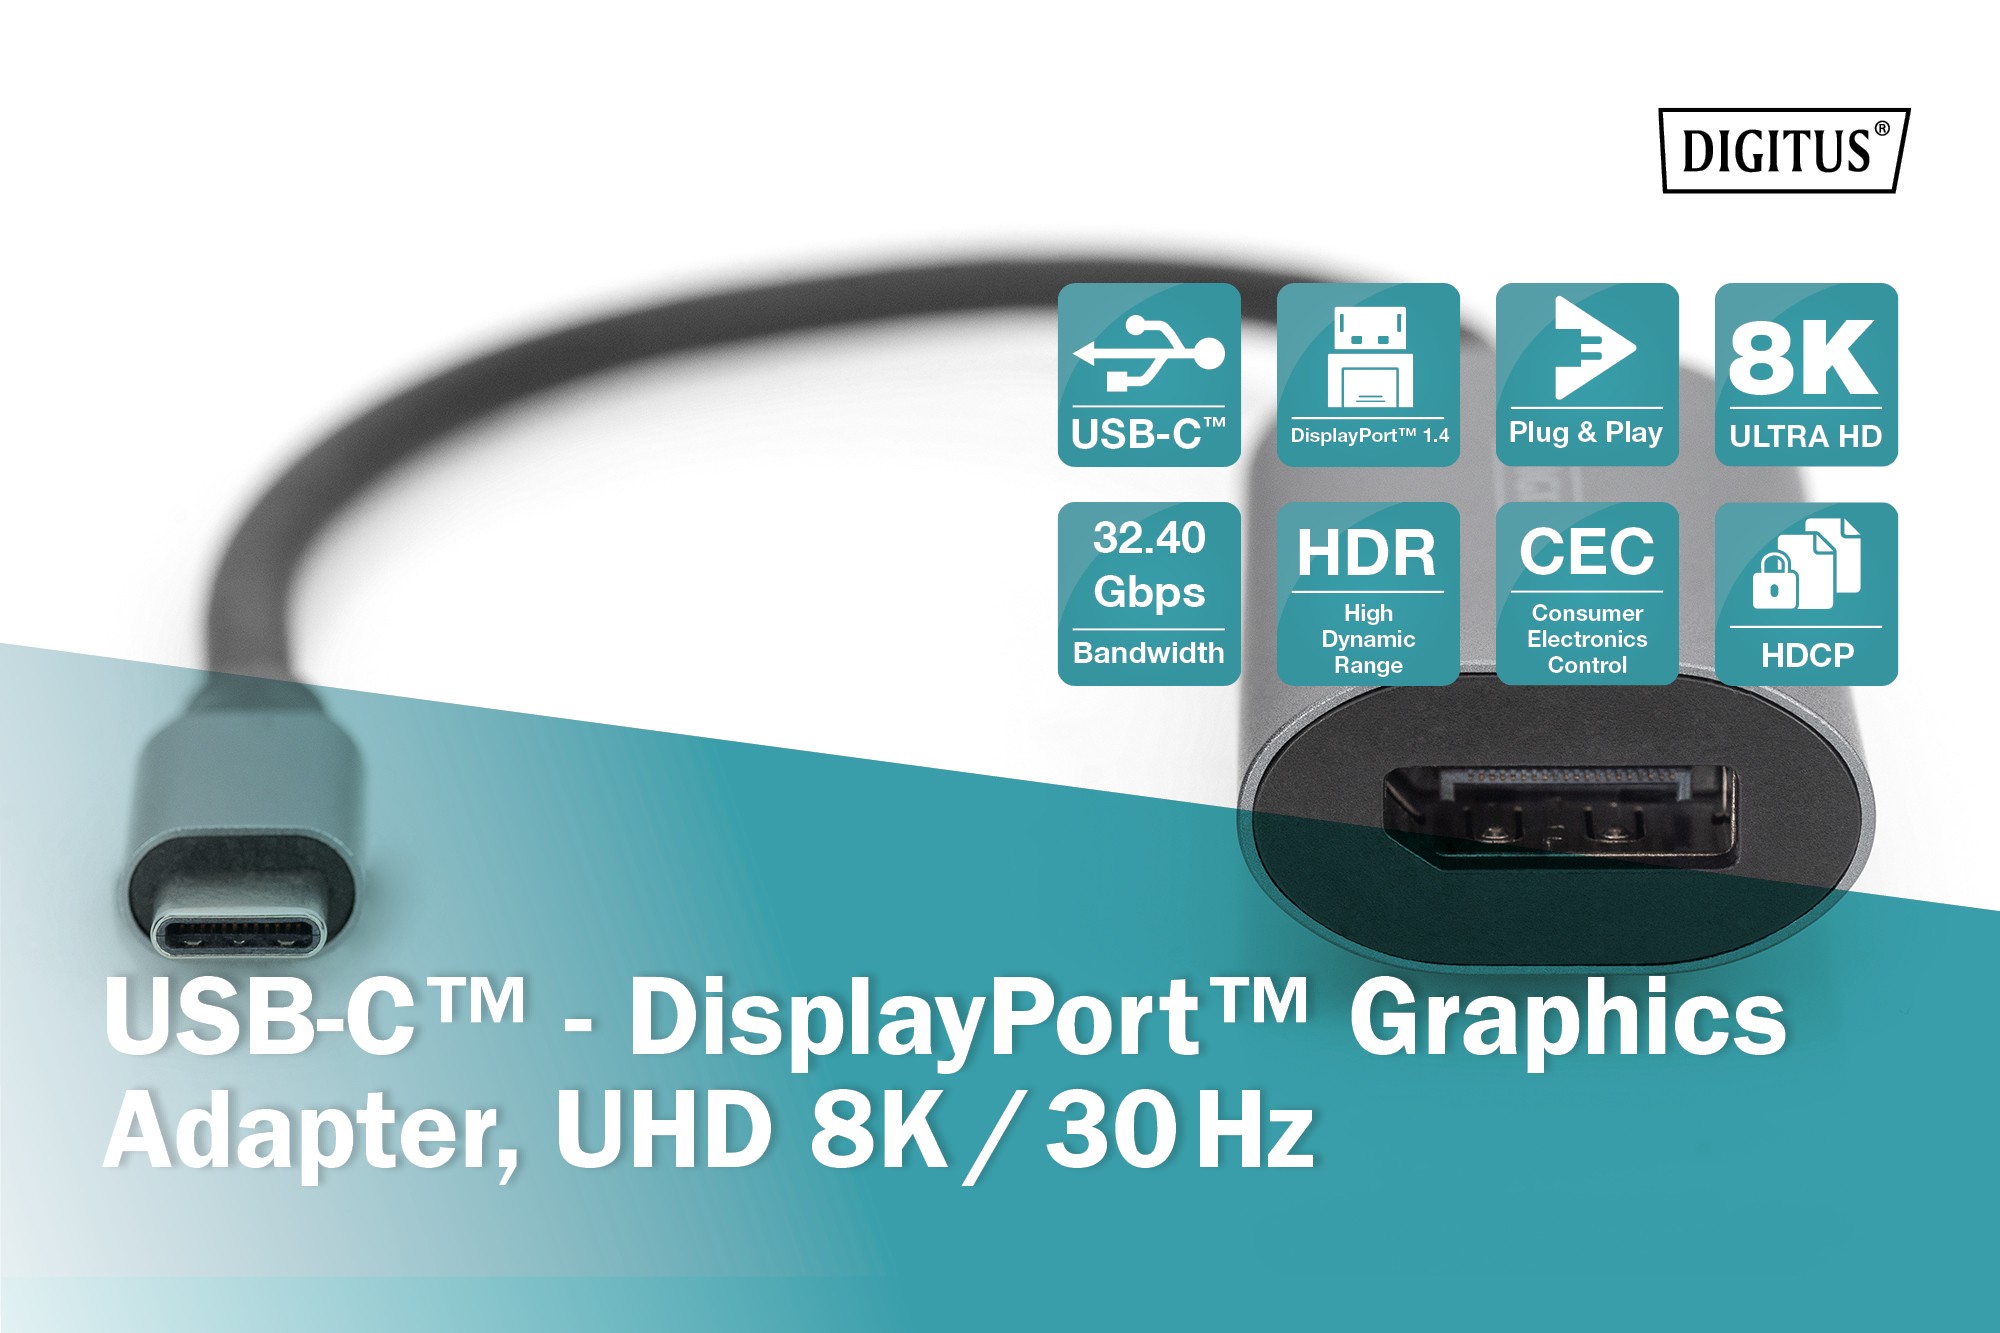 DA-70824  Adaptador gráfico USB-C? - DisplayPort, UHD 8K / 30 Hz